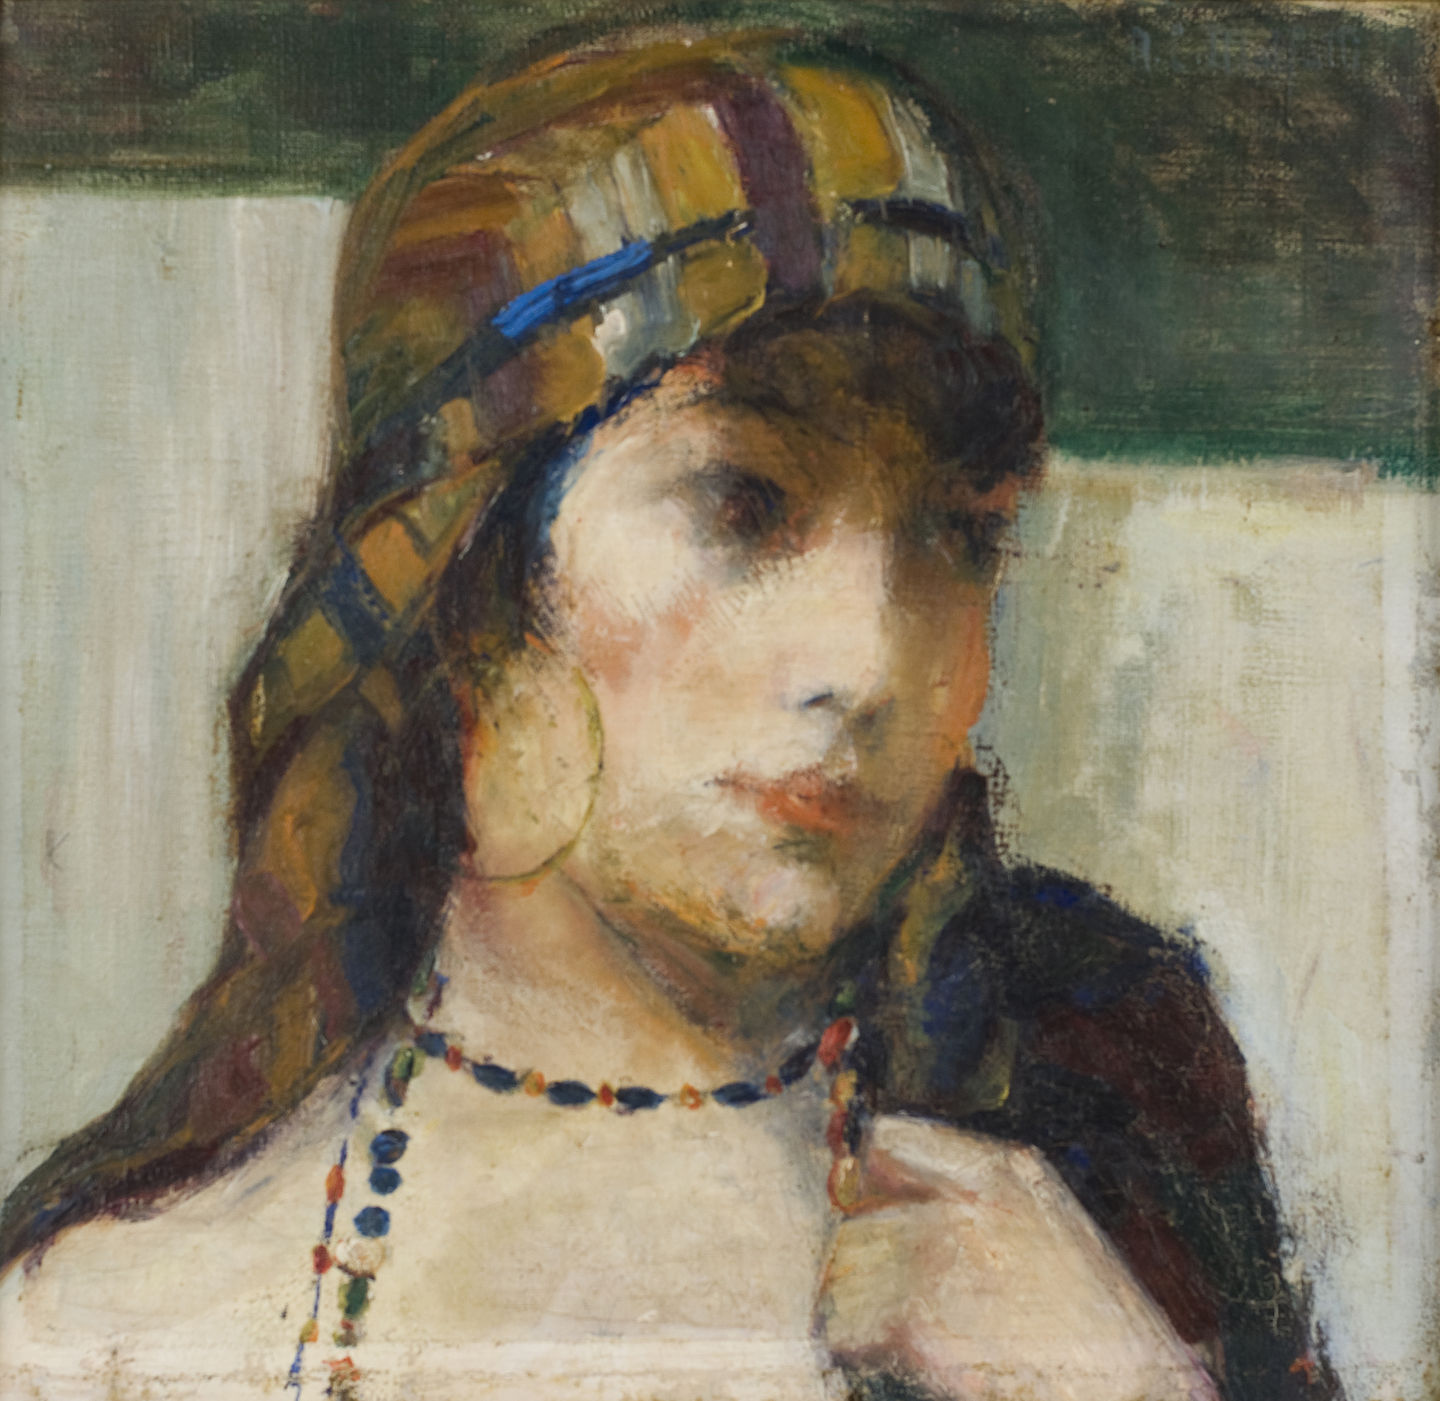 Anita Malfatti. Busto de Mulher, 1910. Oil on canvas.